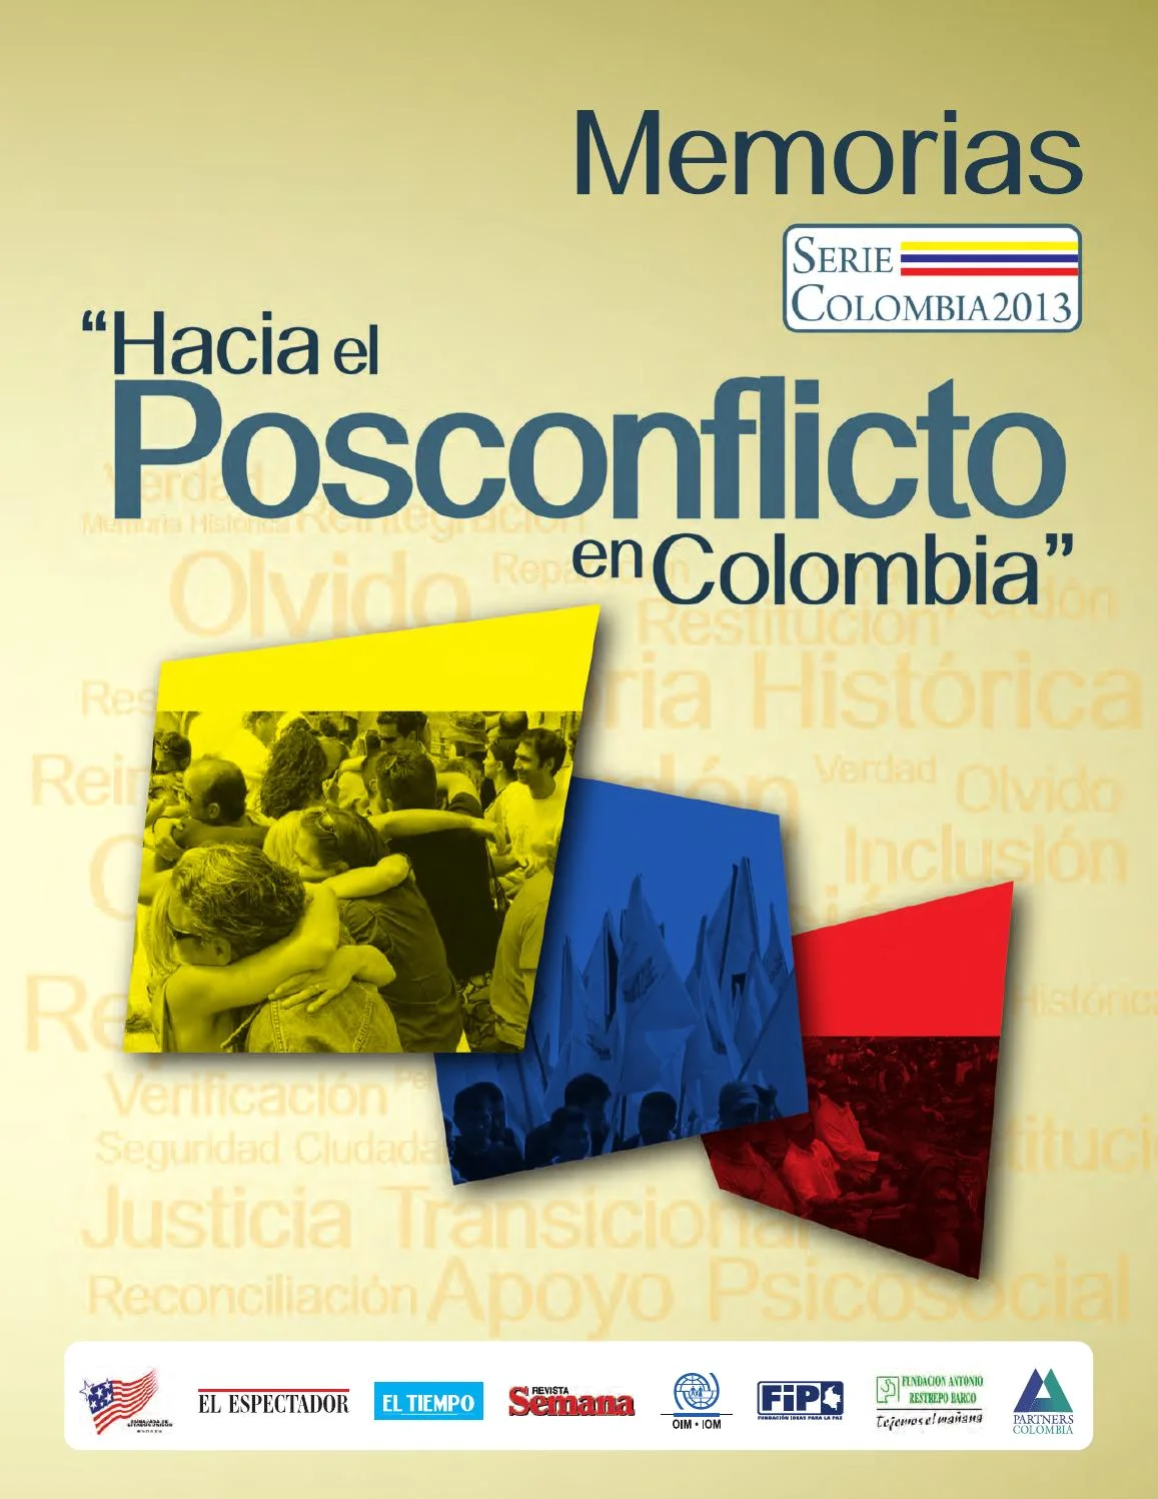 2013 Serie Colombia 2013 Hacia el Posconflicto en Colombia